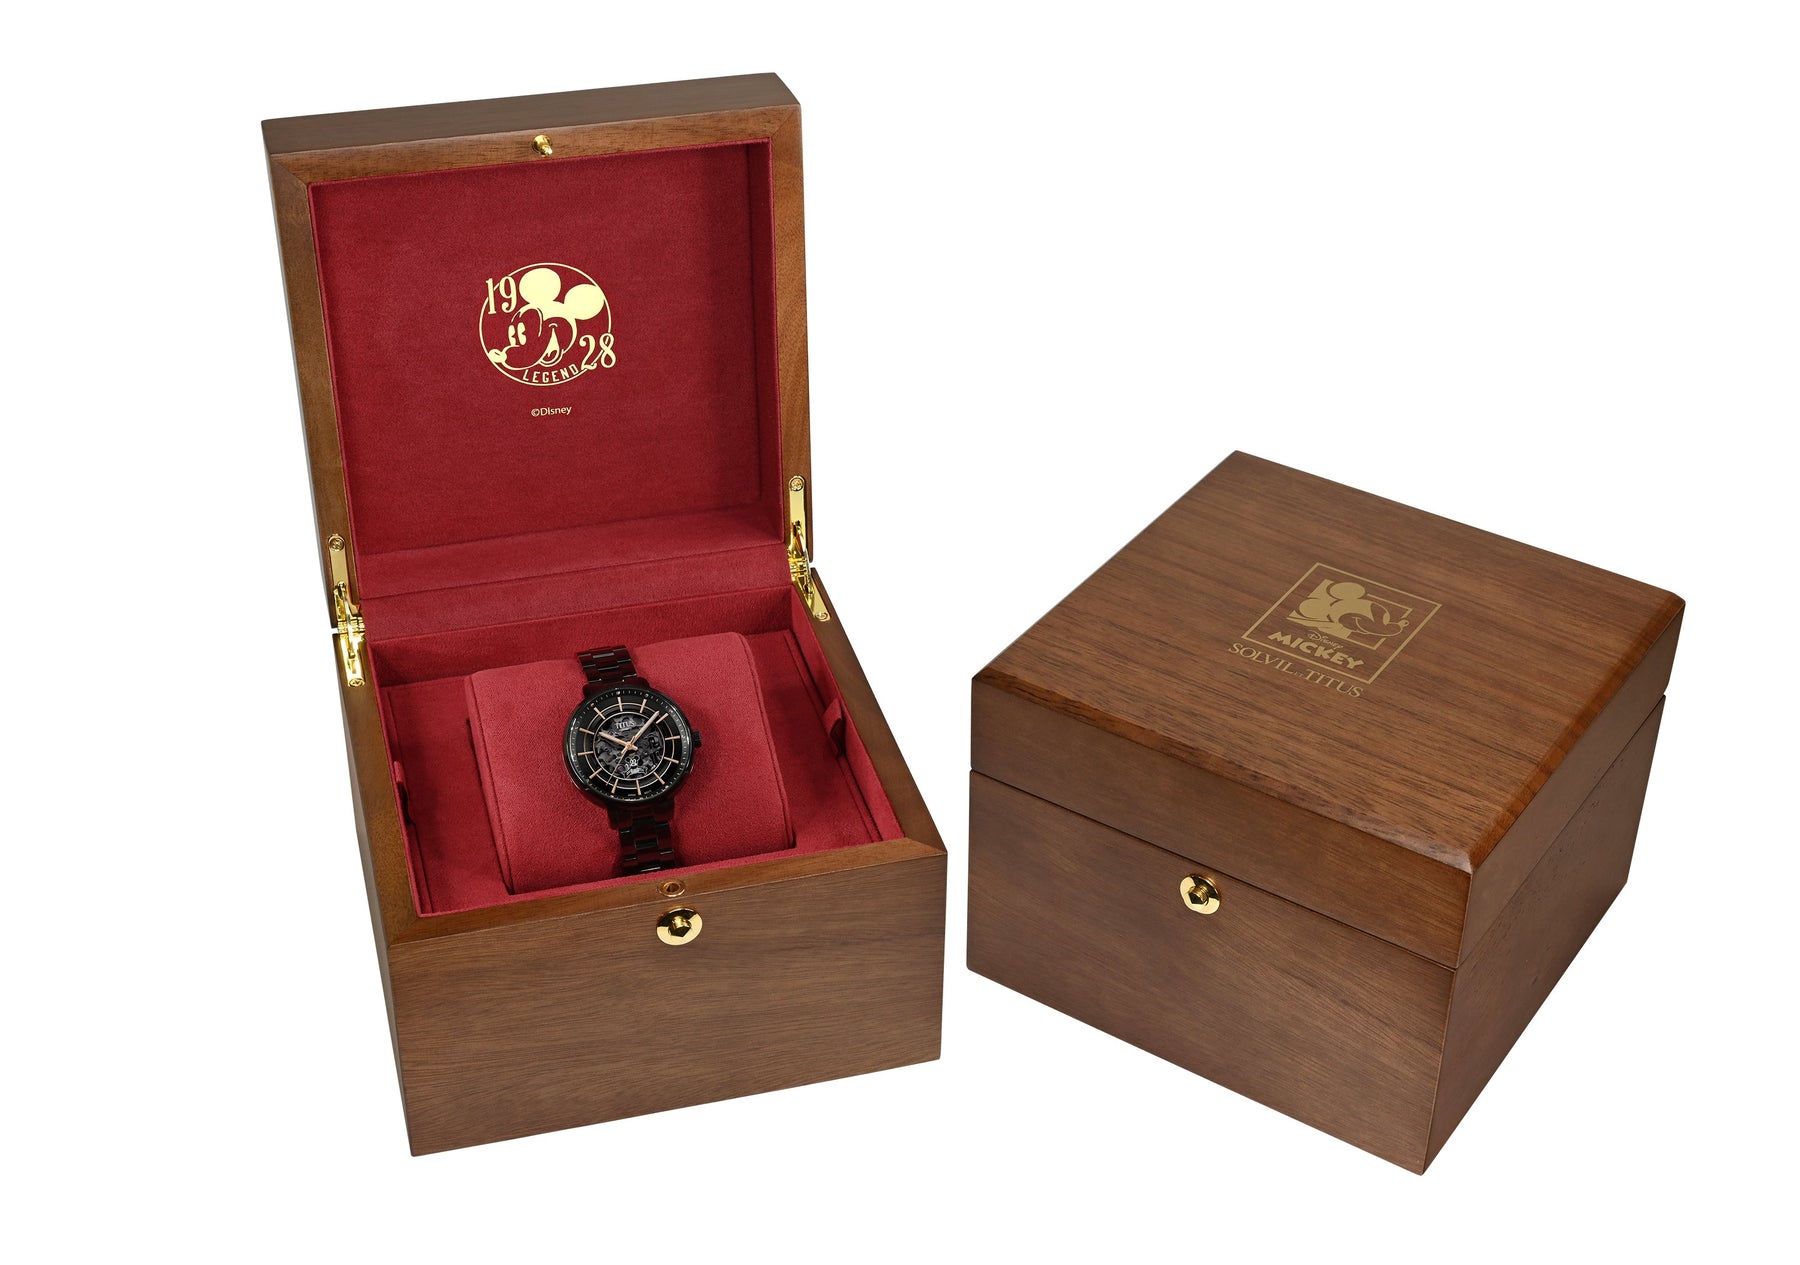 คอลเลกชัน Enlight “Mickey Mouse 95th Anniversary” นาฬิกาผู้หญิง ลิมิเตดอิดิชัน สีดำ 3 เข็ม ระบบออโตเมติก สายสแตนเลสสตีล ขนาดตัวเรือน 36 มม. (W06-03351-001)